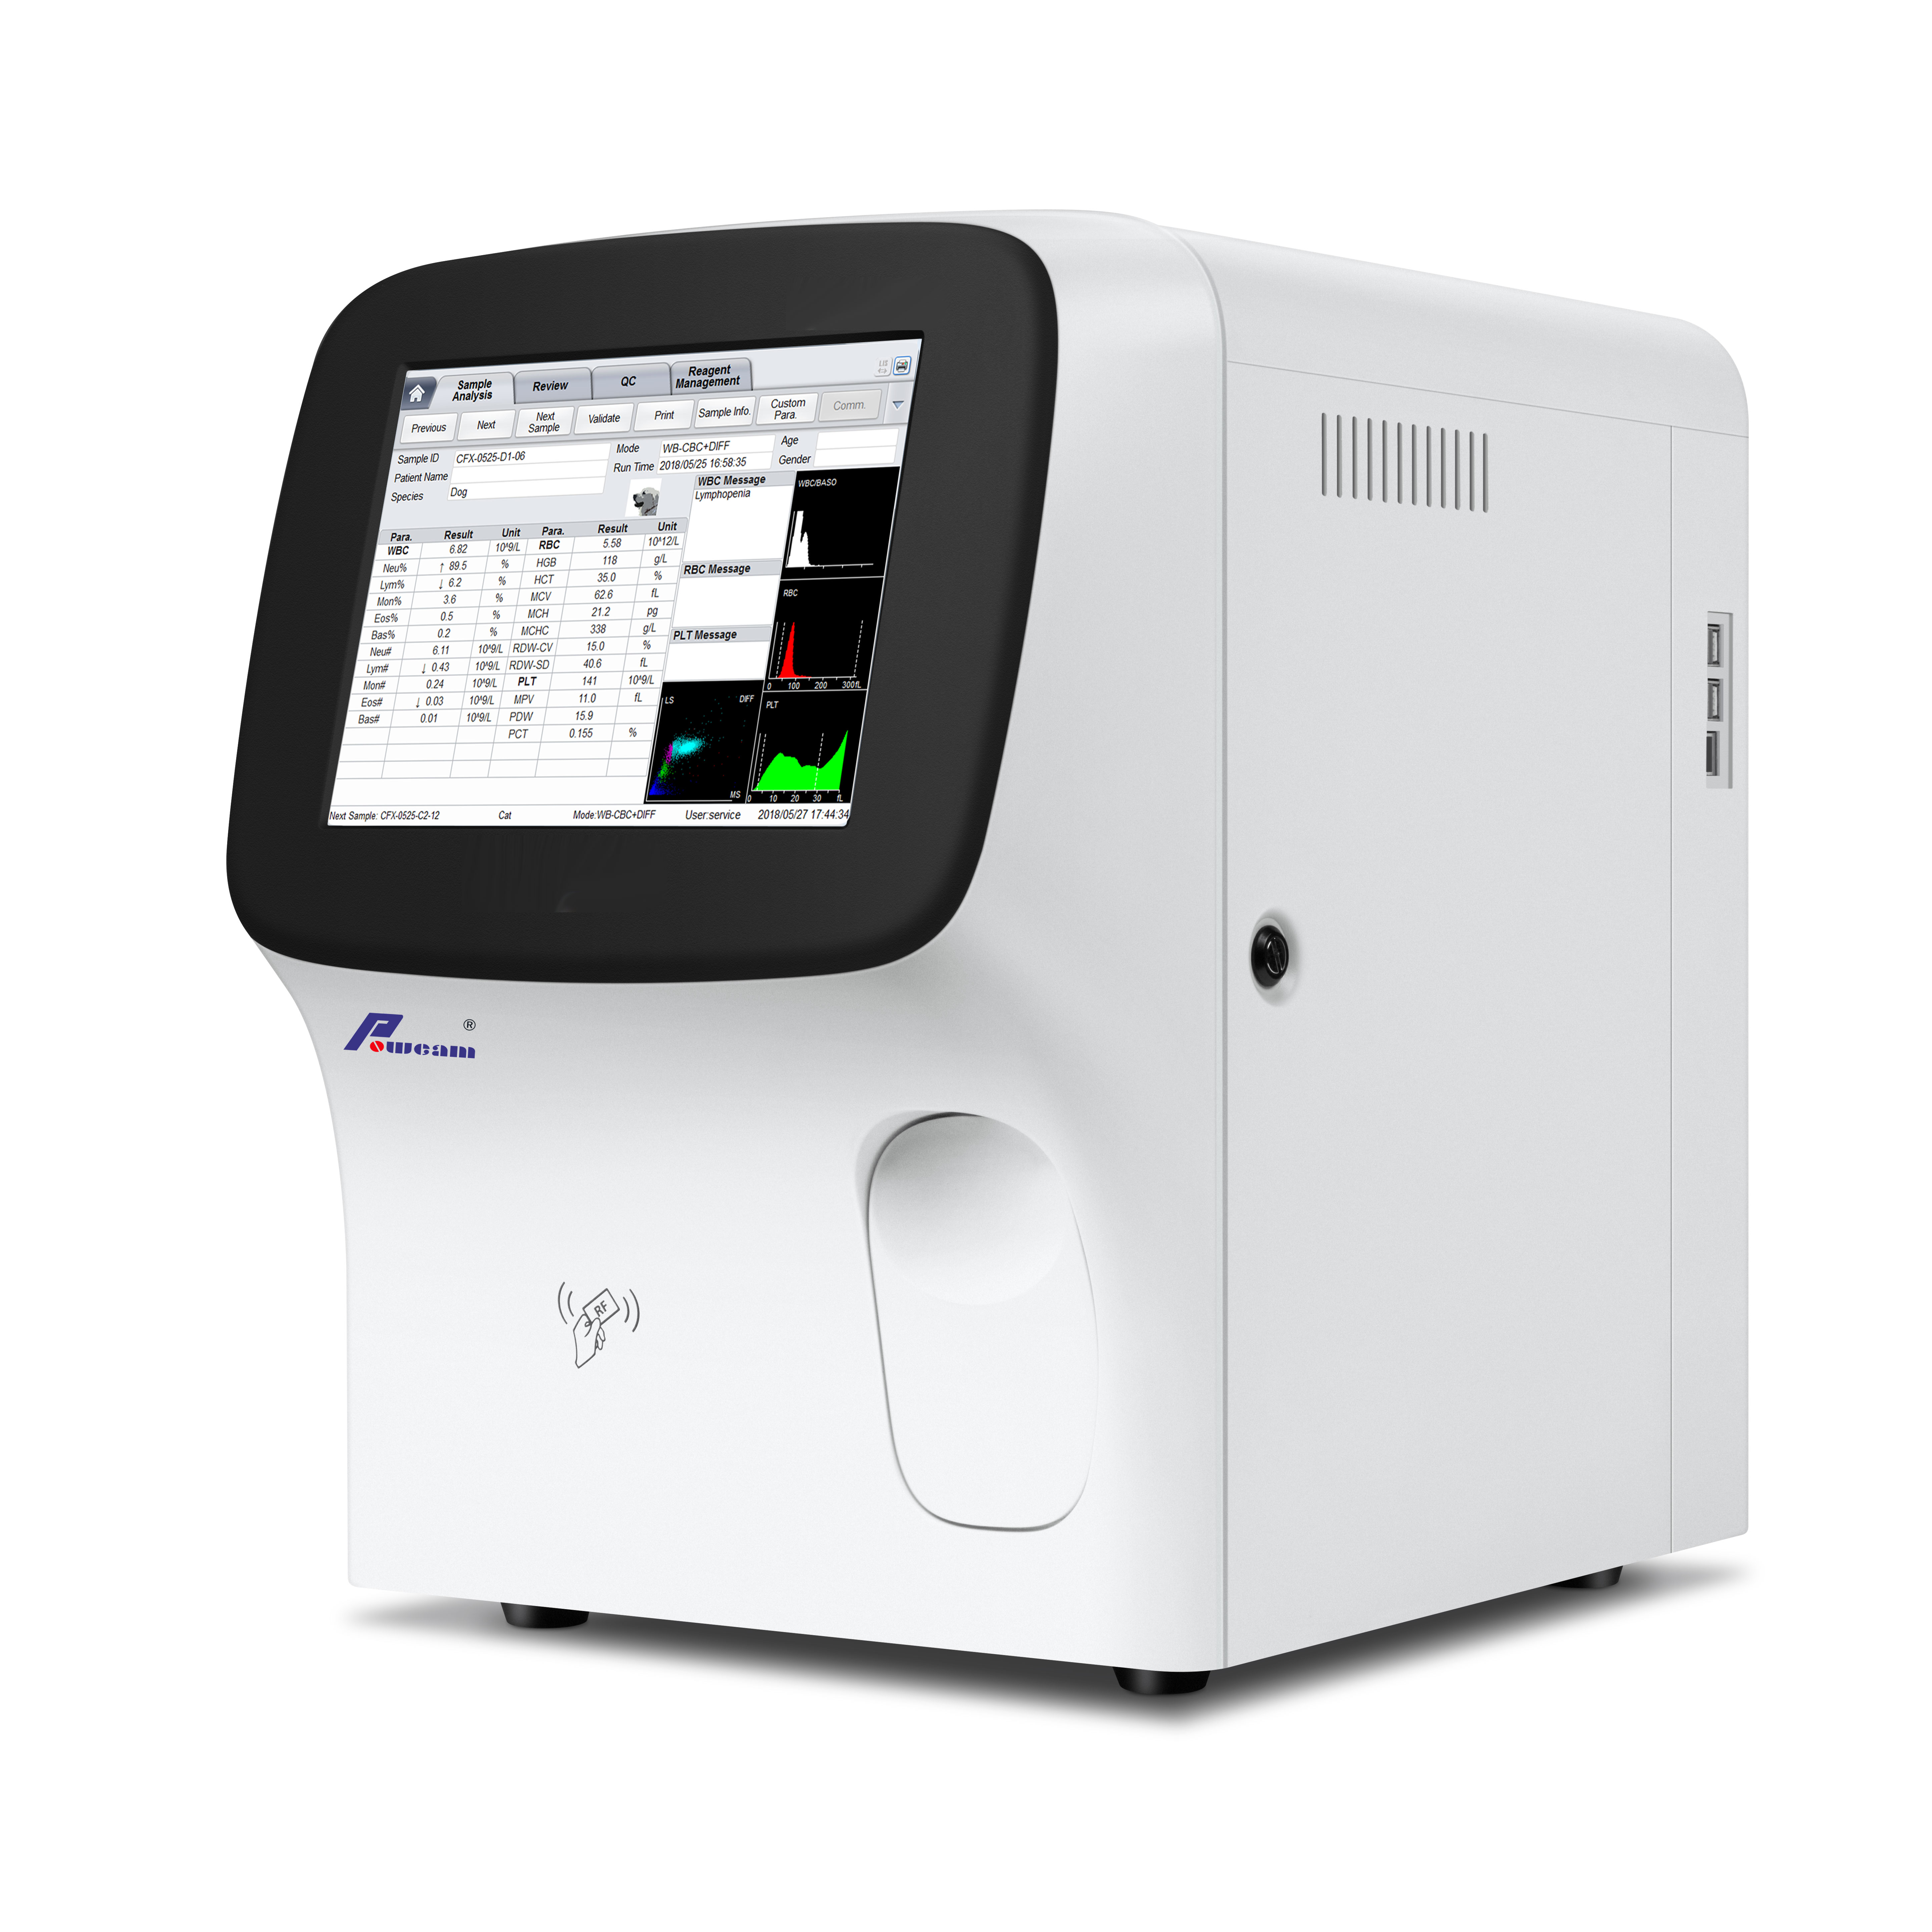 Analizador de hematología automática de 5 partes para el analizador de hematología VET